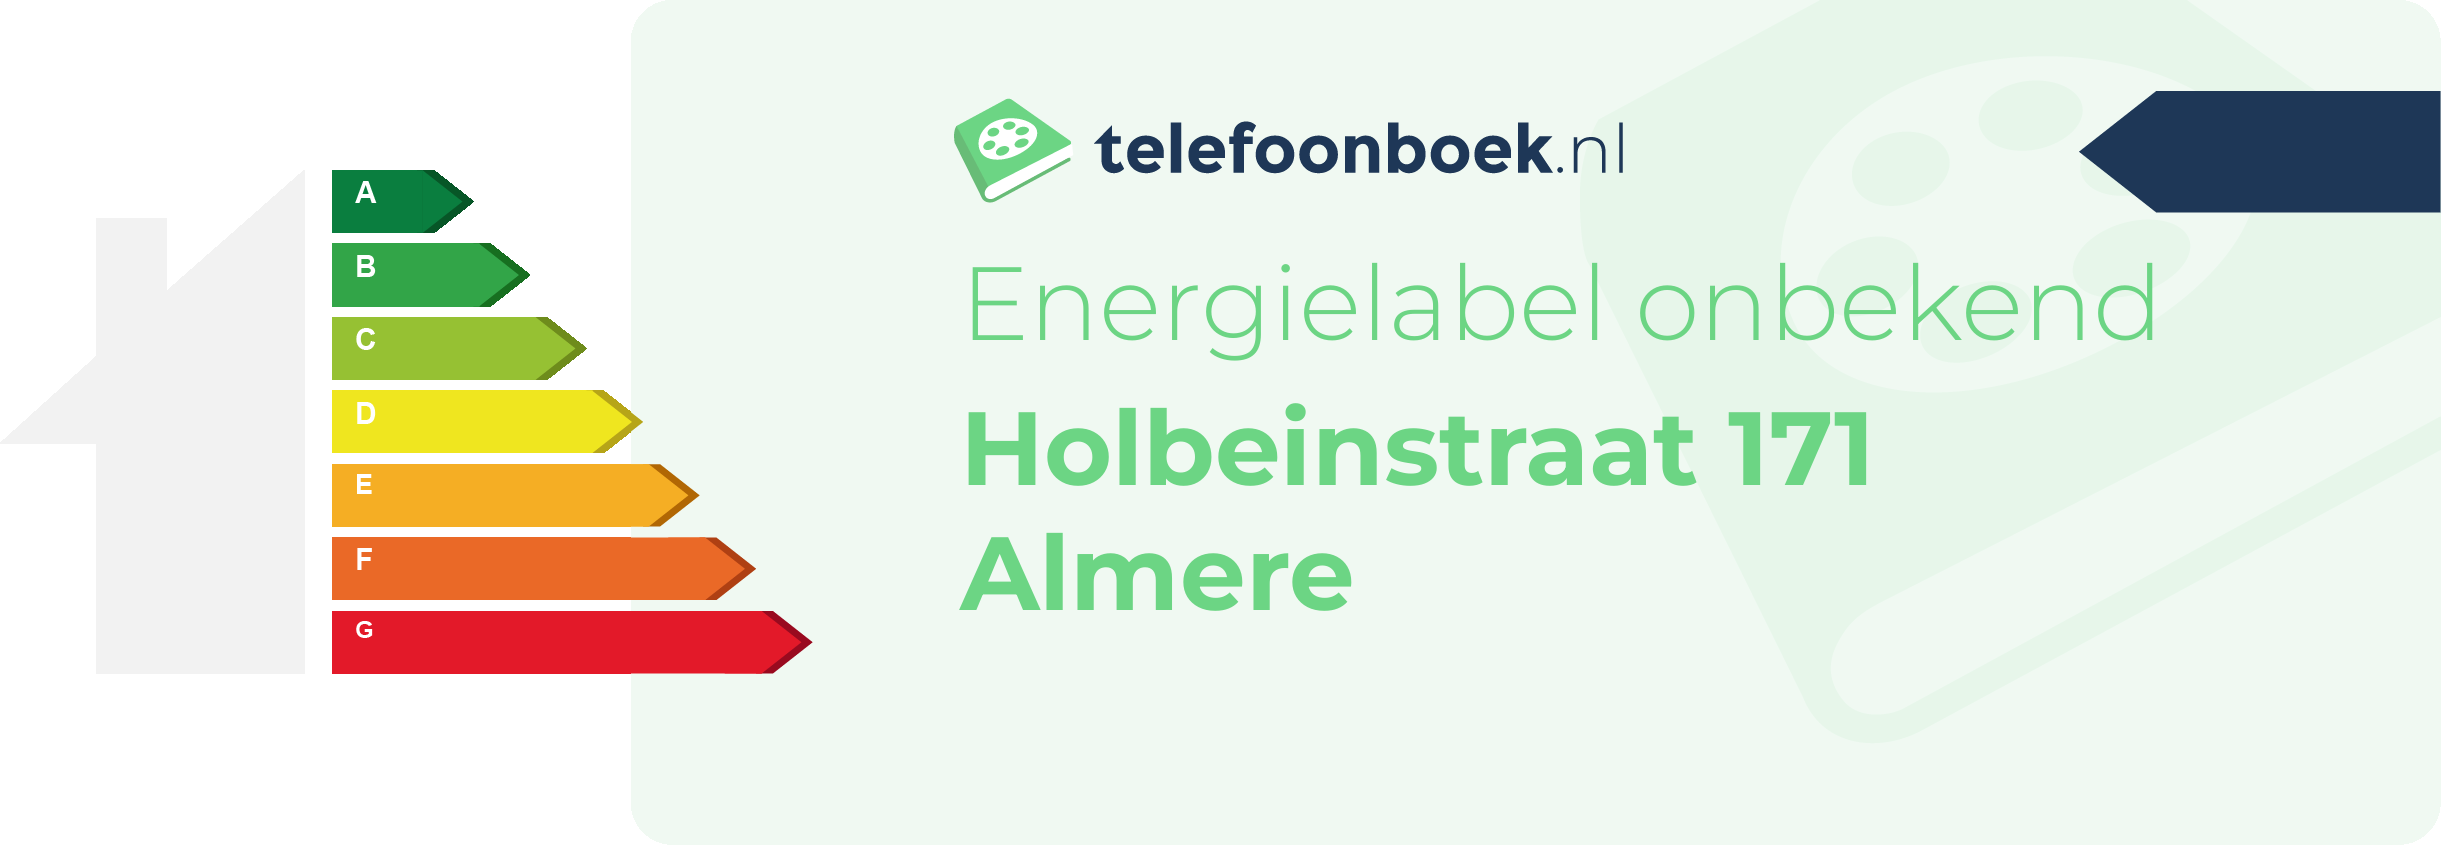 Energielabel Holbeinstraat 171 Almere